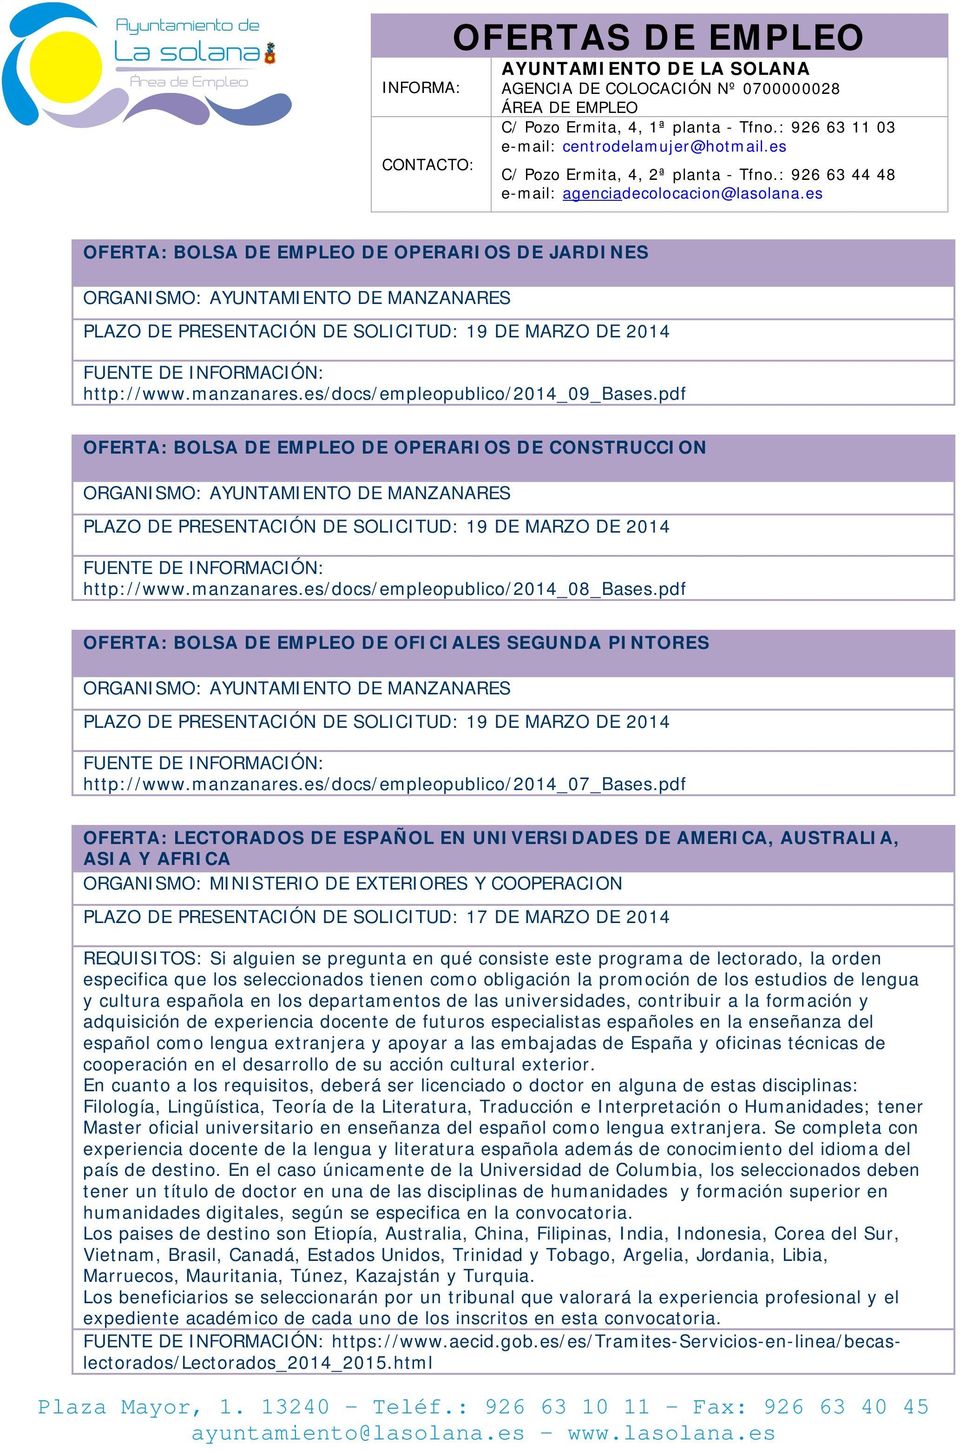 pdf OFERTA: BOLSA DE EMPLEO DE OPERARIOS DE CONSTRUCCION ORGANISMO: AYUNTAMIENTO DE MANZANARES PLAZO DE PRESENTACIÓN DE SOLICITUD: 19 DE MARZO DE 2014 FUENTE DE INFORMACIÓN: http://www.manzanares.